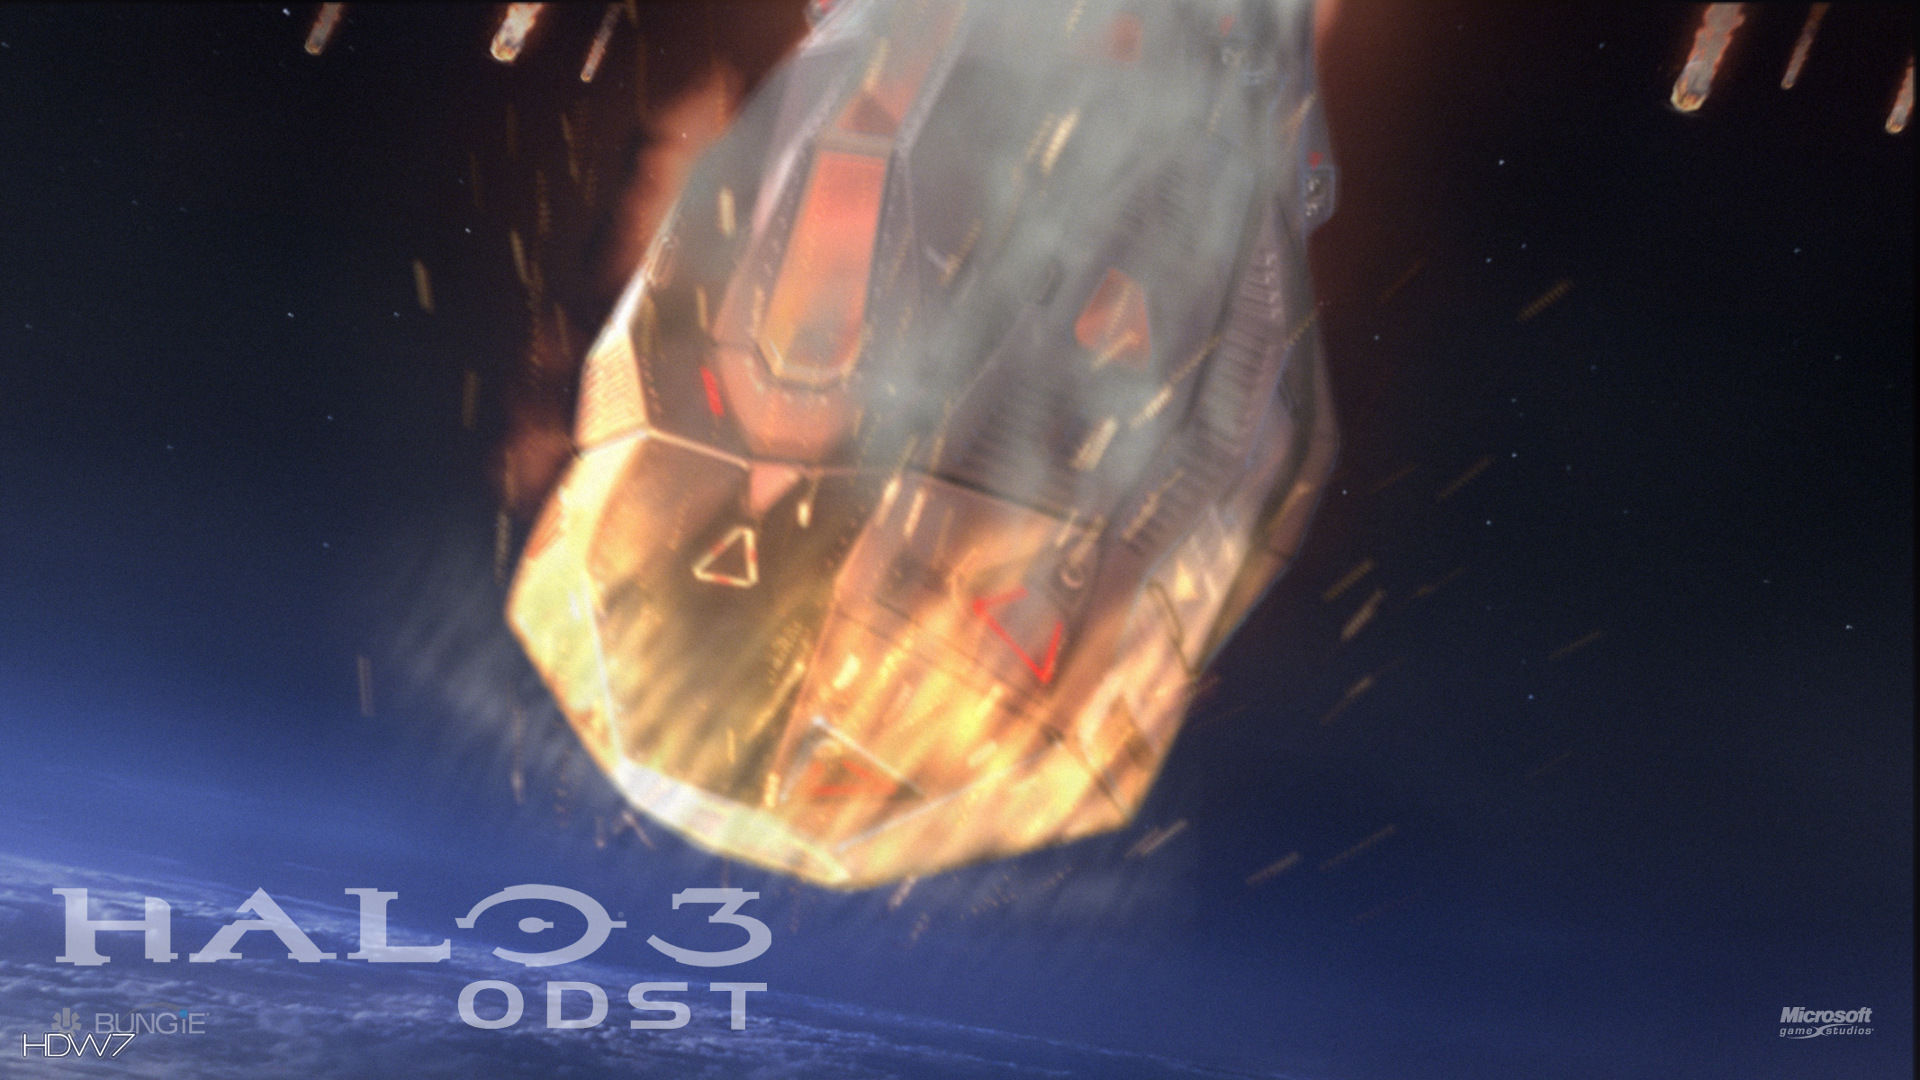 Halo 3 Odst Feet First Widescreen Hd Wallpaper - Halo 3 Odst , HD Wallpaper & Backgrounds